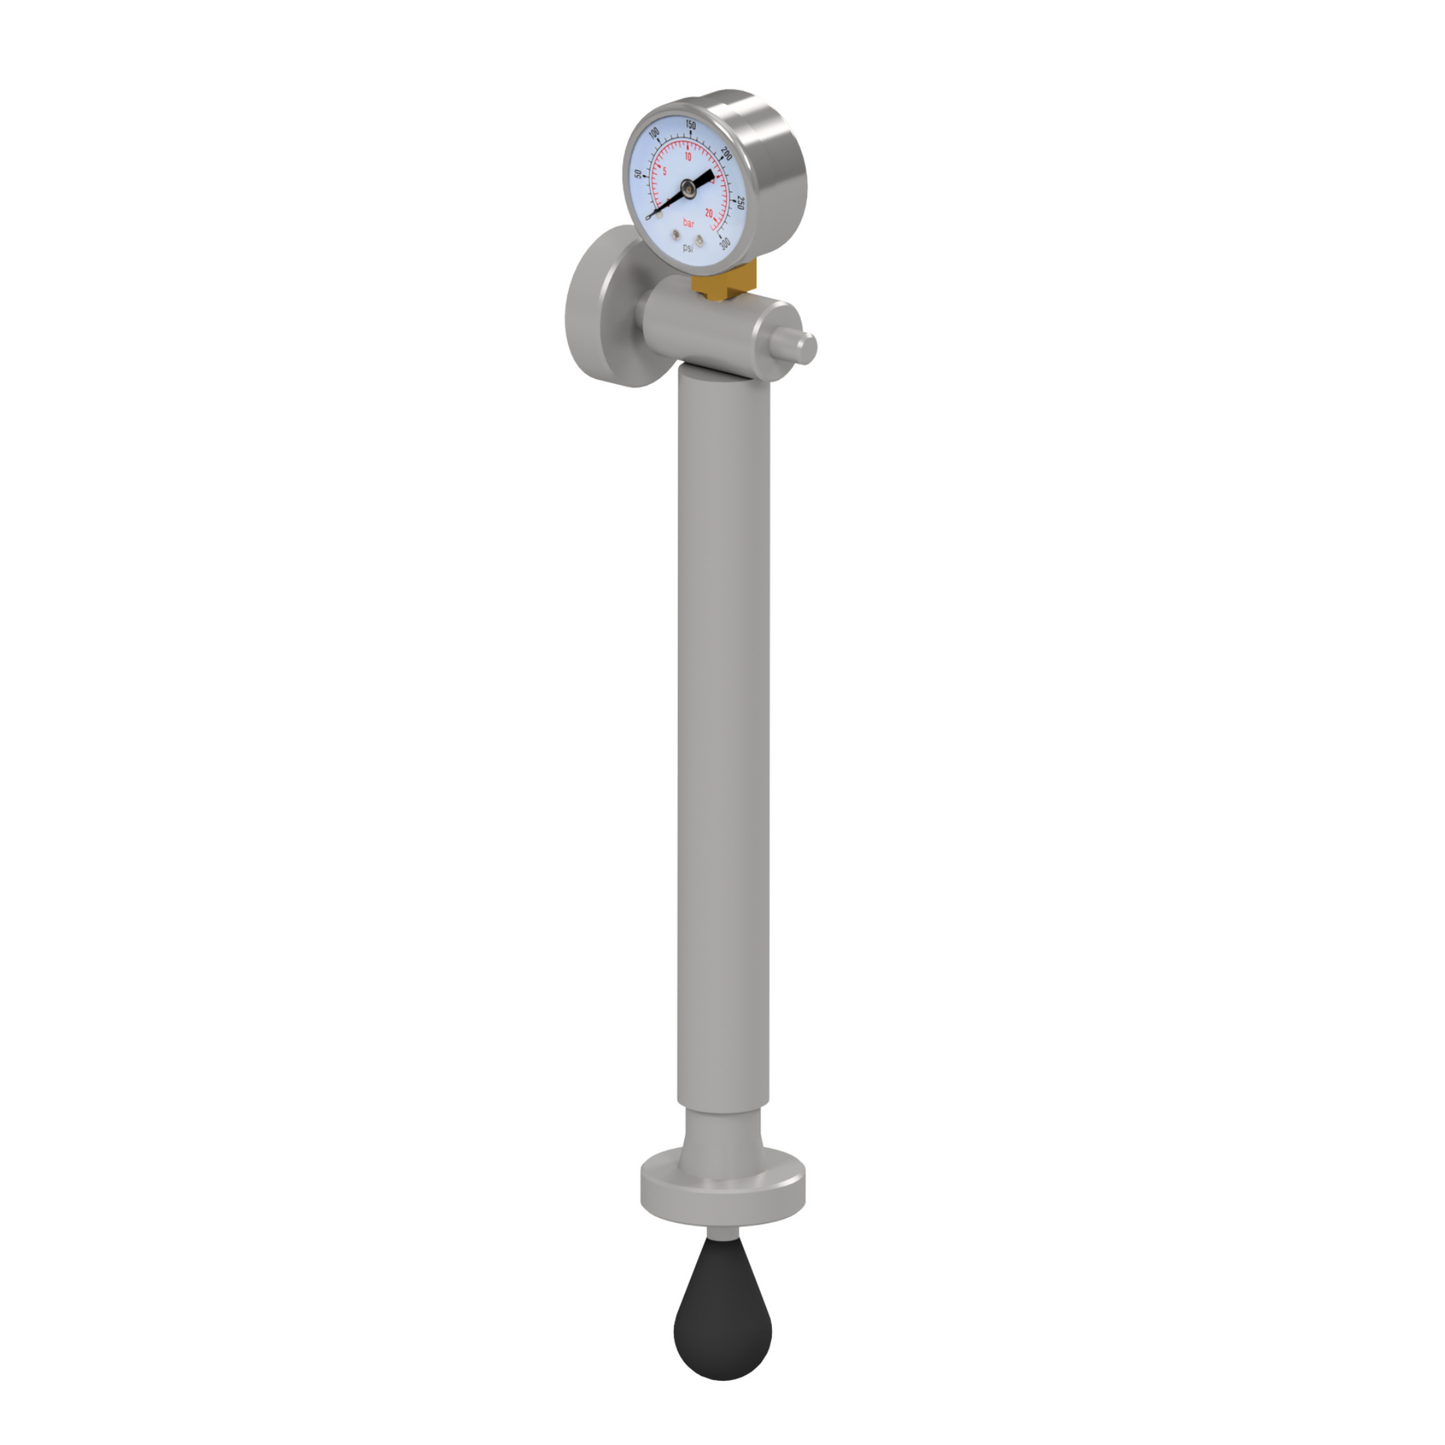 Pompa Albrigi con manometro per semprepieni inferiori a 20 HL